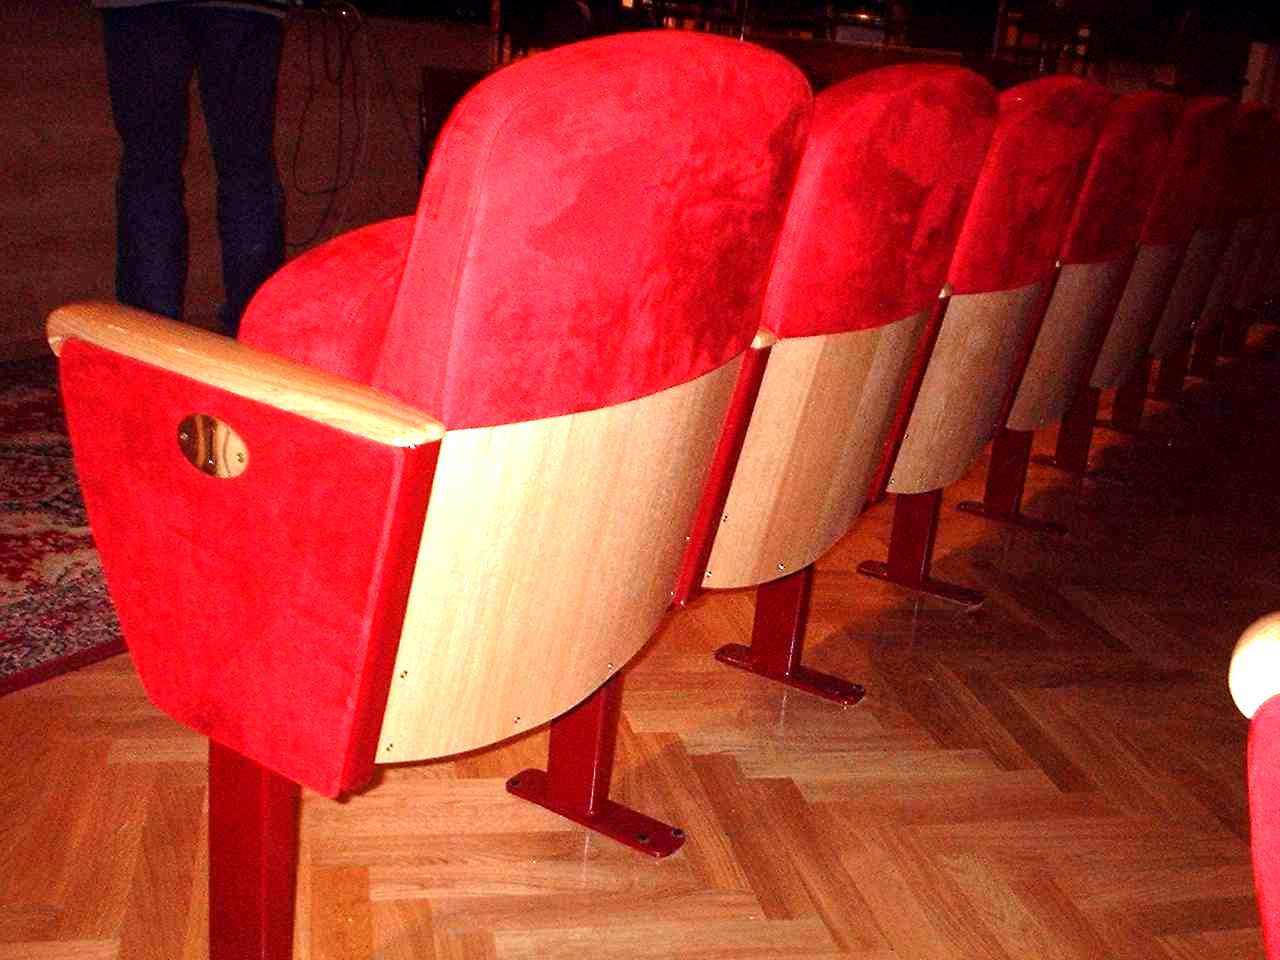 DOBÓR FOTELI a publiczność na widowni widownia lub podium chóru, zapełnione widownia zapełniona osoby na krzesłach drewn.,2 os./m 2 wykładzina podłog.